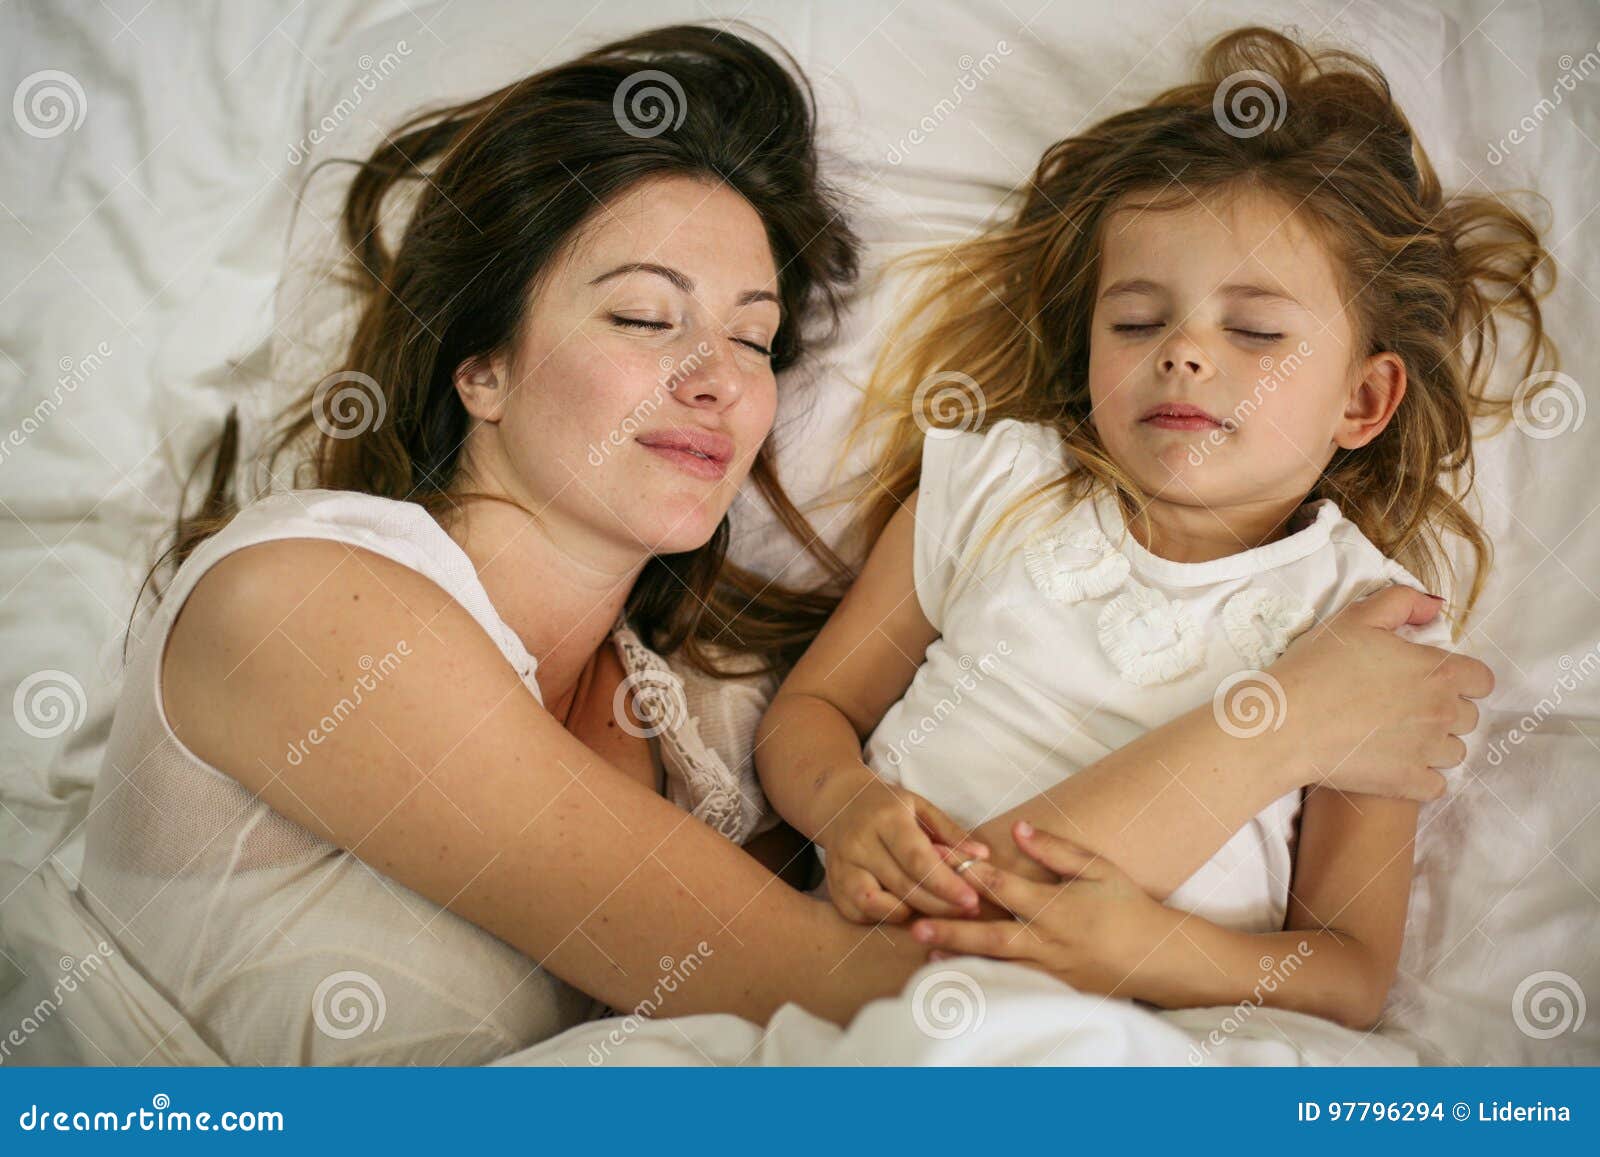 С ее мамой в постели. Мама с дочкой спят в обнимку. Мать и дочь обнимаются постель. Сон с дочкой в обнимку. Мама с дочей сон.